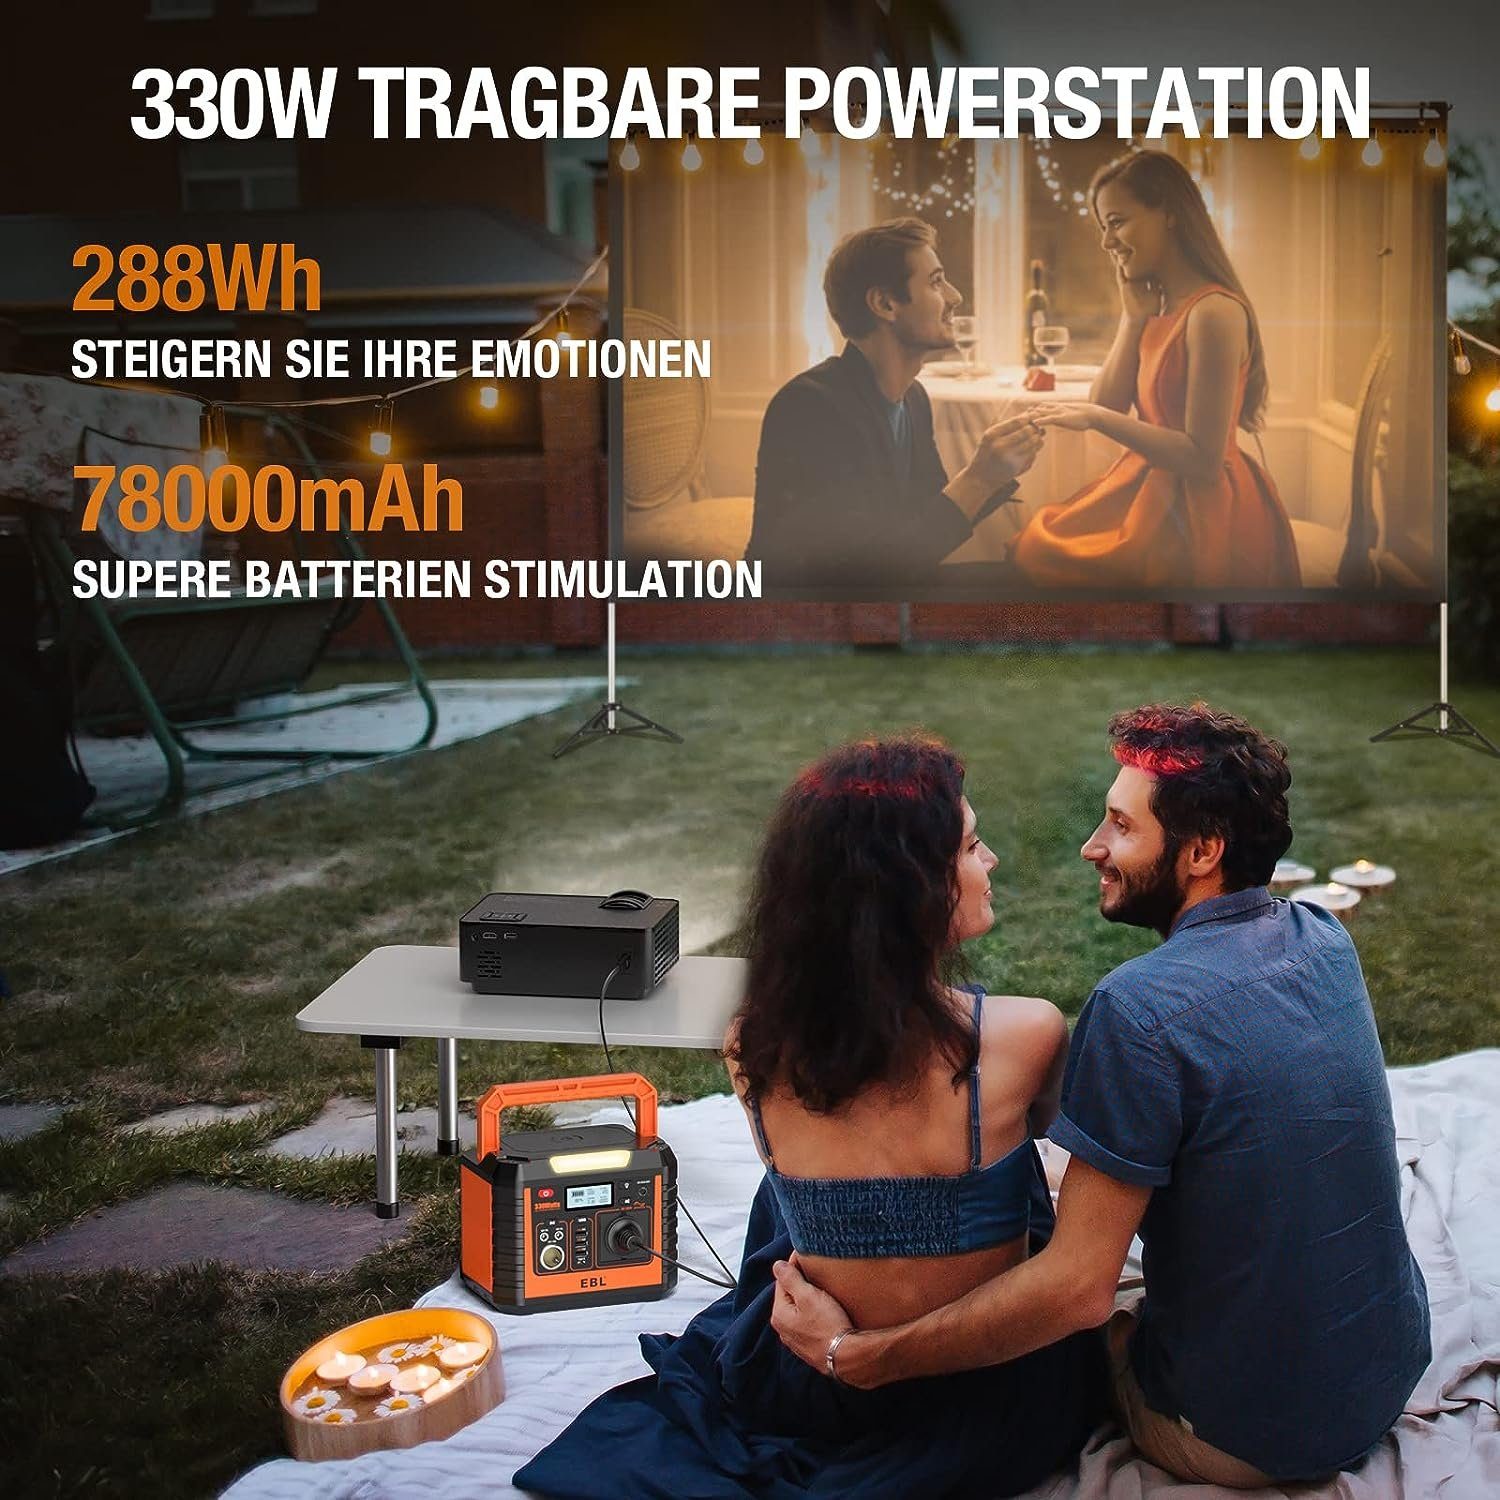 Stromerzeuger, Outdoor Camping Tragbarer Solarpanel,288Wh EBL (1-tlg), Powerstation 330W mit für Stromerzeuger